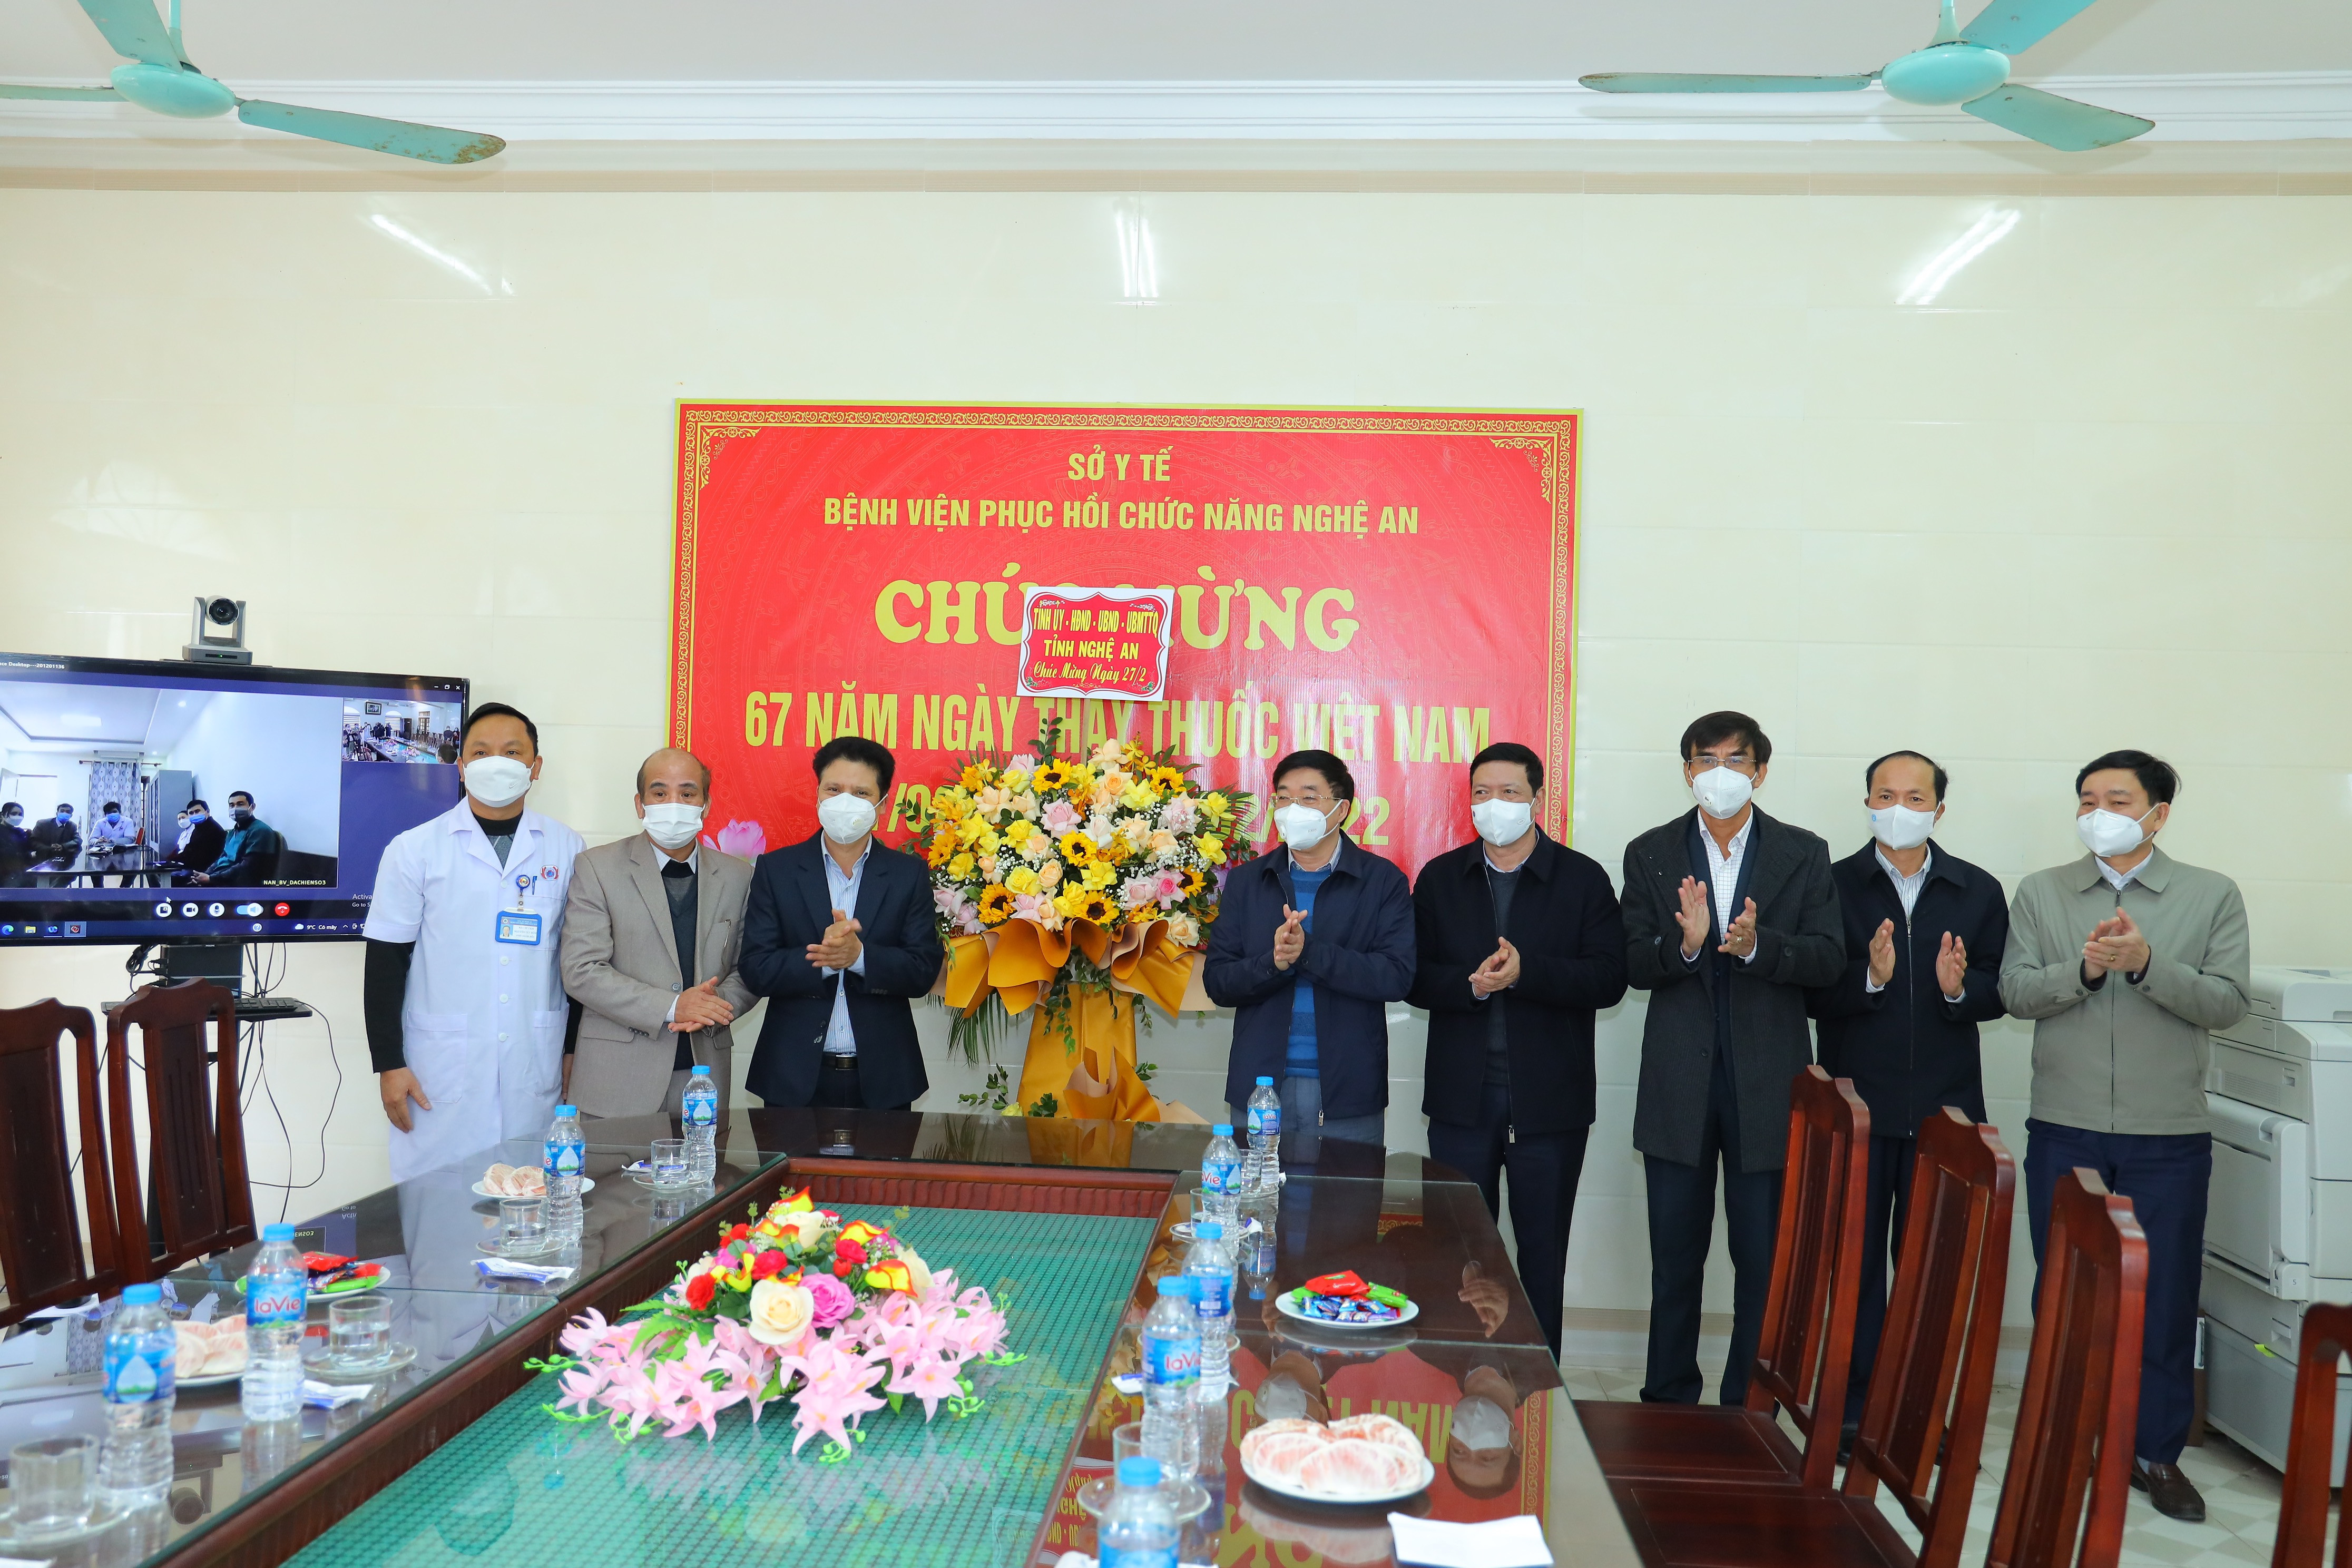 Đồng chí Nguyễn Văn Thông cùng đoàn công tác chúc mừng cán bộ, y bác sỹ Bệnh viện phục hồi chức năng Nghệ An. Ảnh Nguyên Sơn